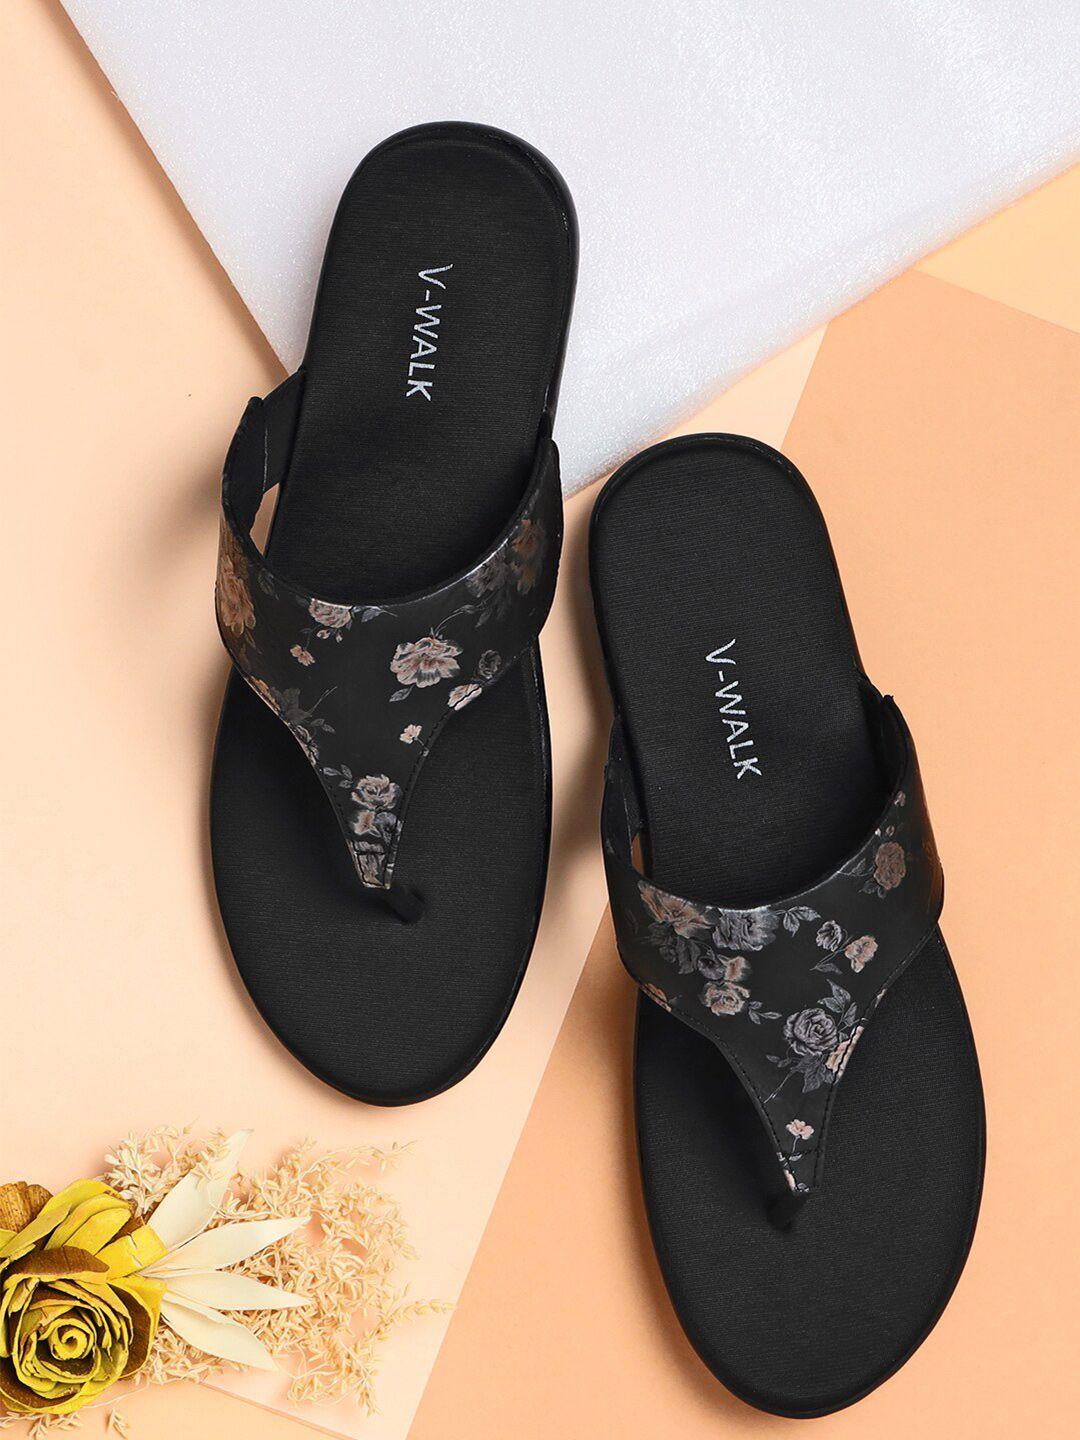 v-walk floral printed open toe flats